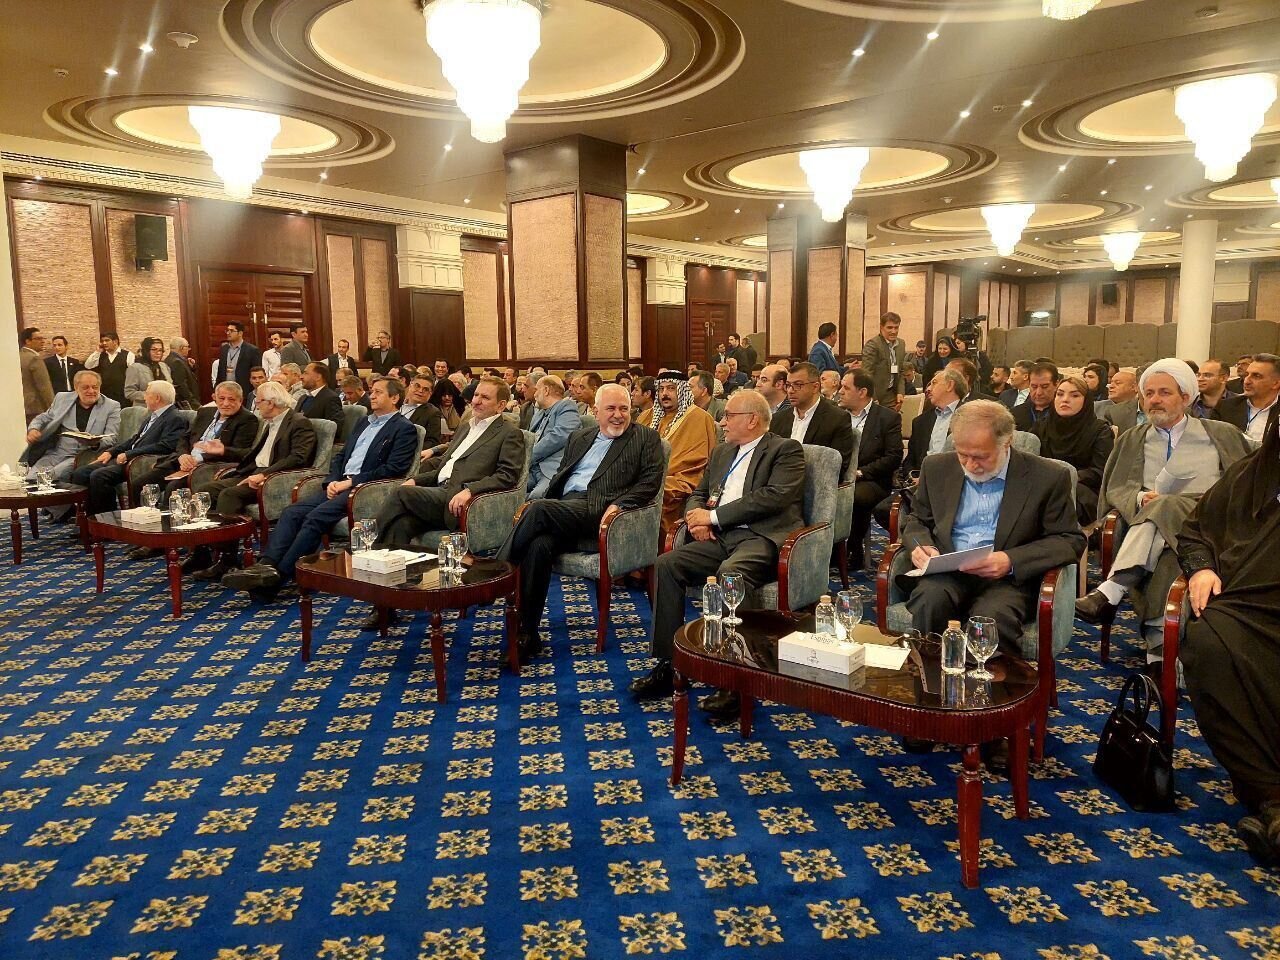 جهانگیری، همتی و کرباسچی عضو شورای مشورتی کارگزاران شدند / ظریف، مهمان ویژه کنگره شد + عکس 2